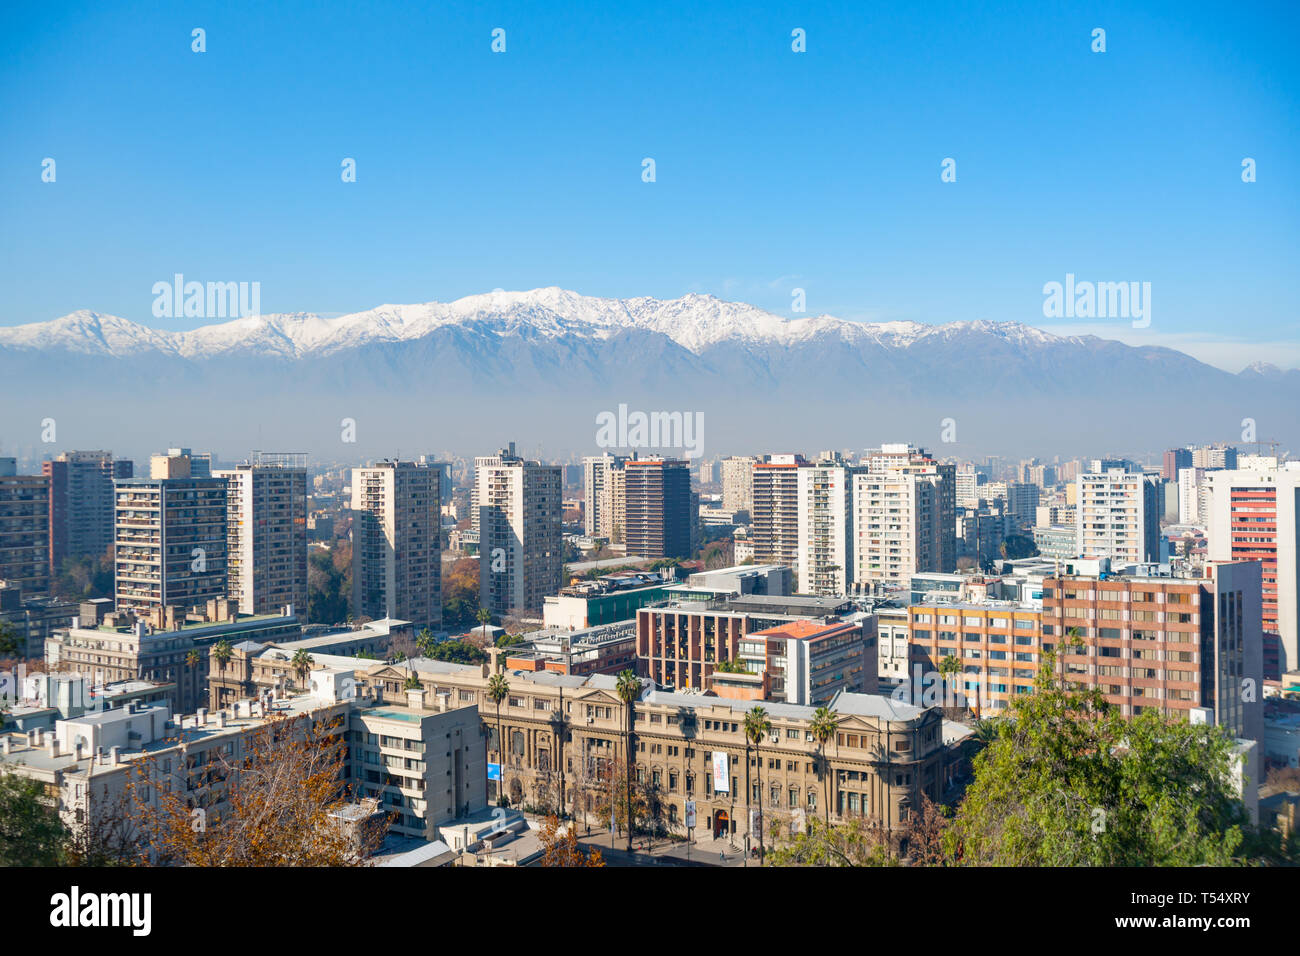 La ville moderne de Santiago au Chili, du point de vue surplombant le centre-ville centre commercial avec des sommets enneigés des Andes en arrière-plan. Banque D'Images